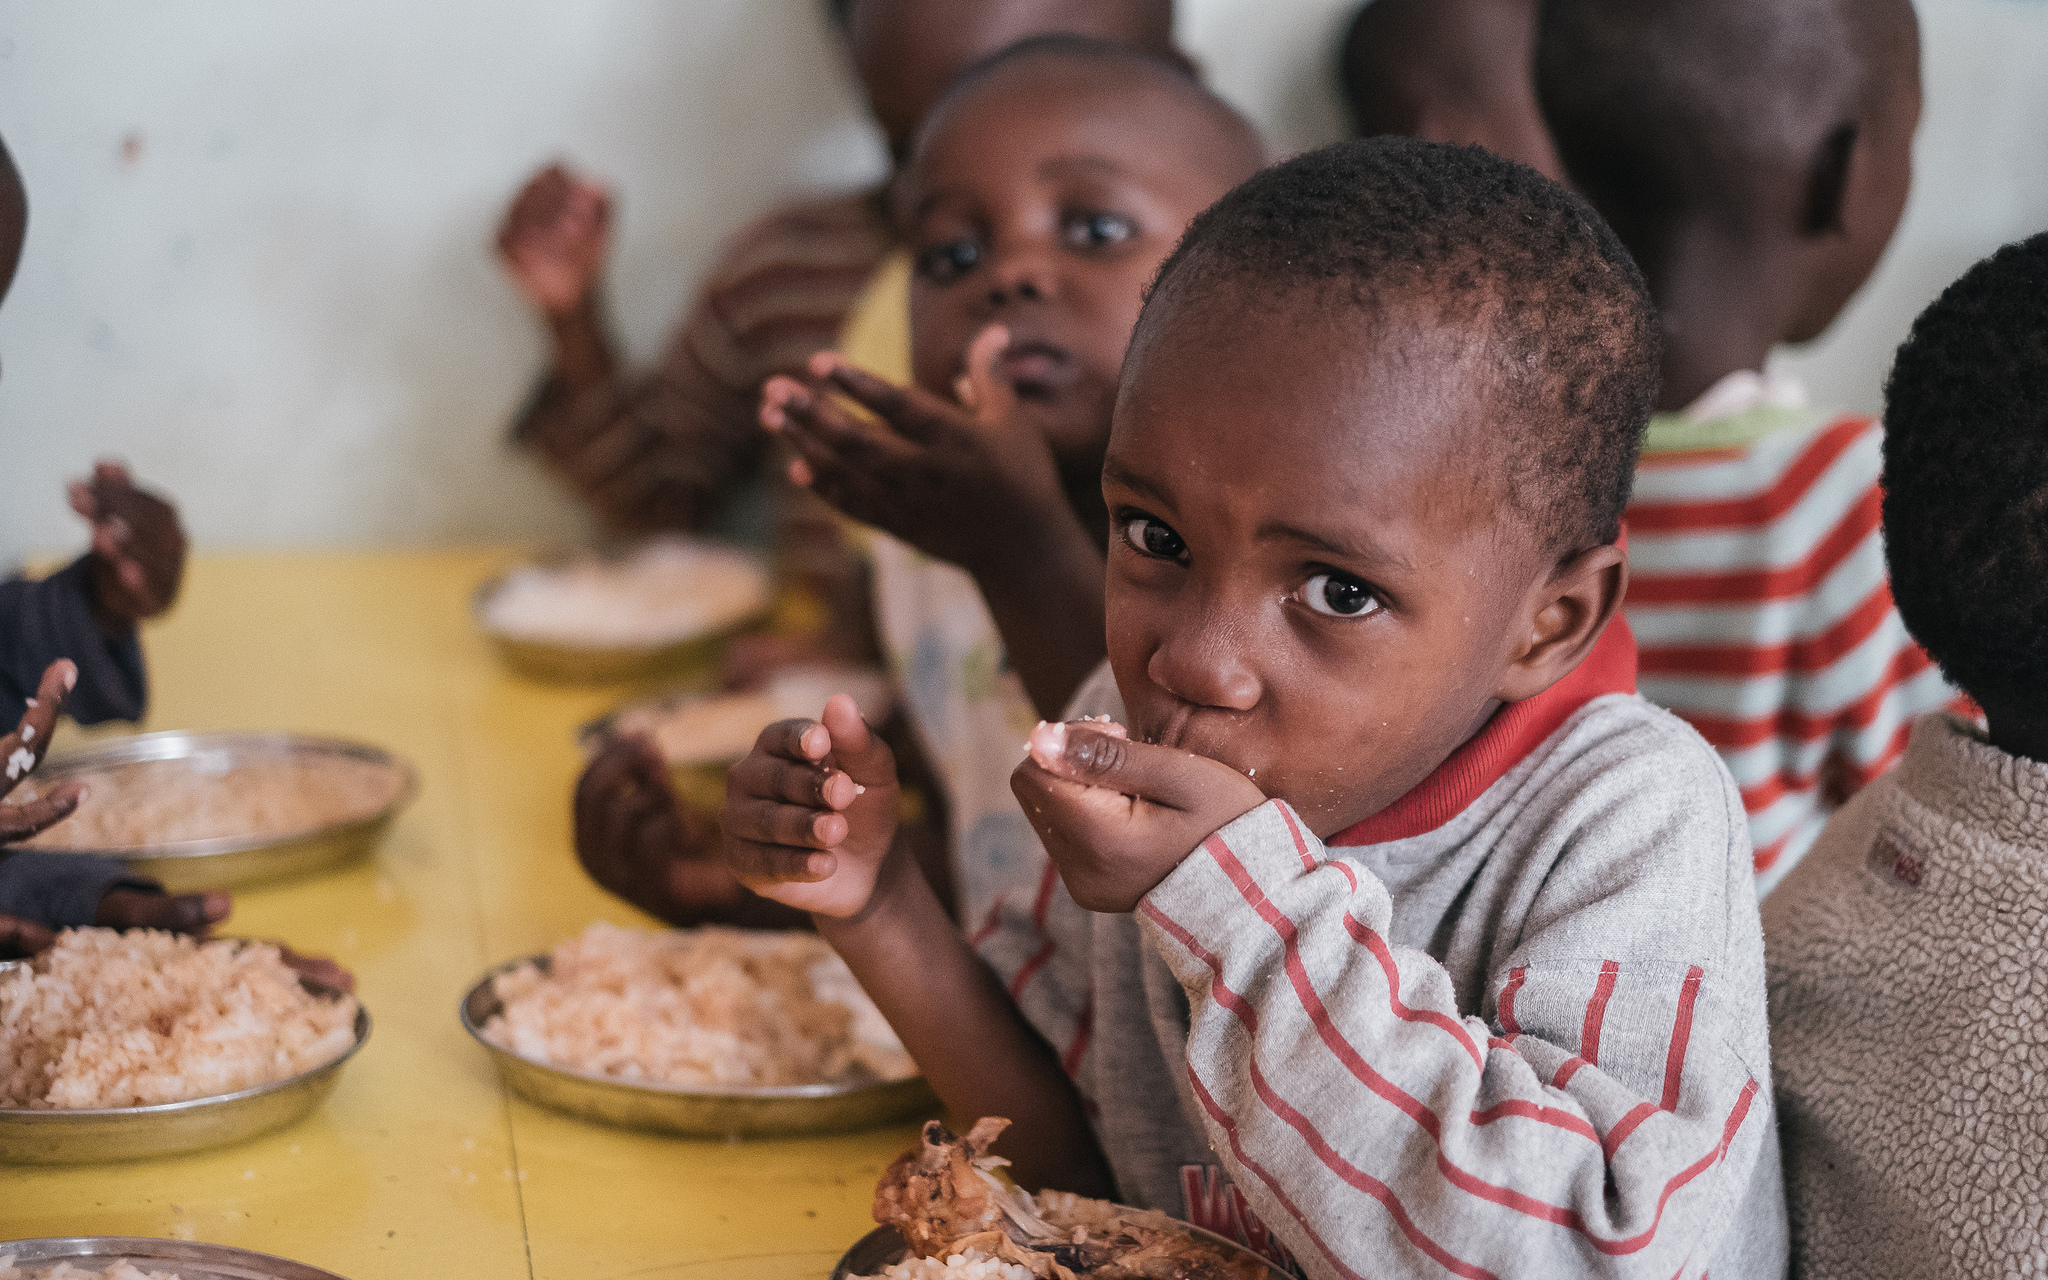 Ветка с голодом клуб. Голодные дети в др Конго.